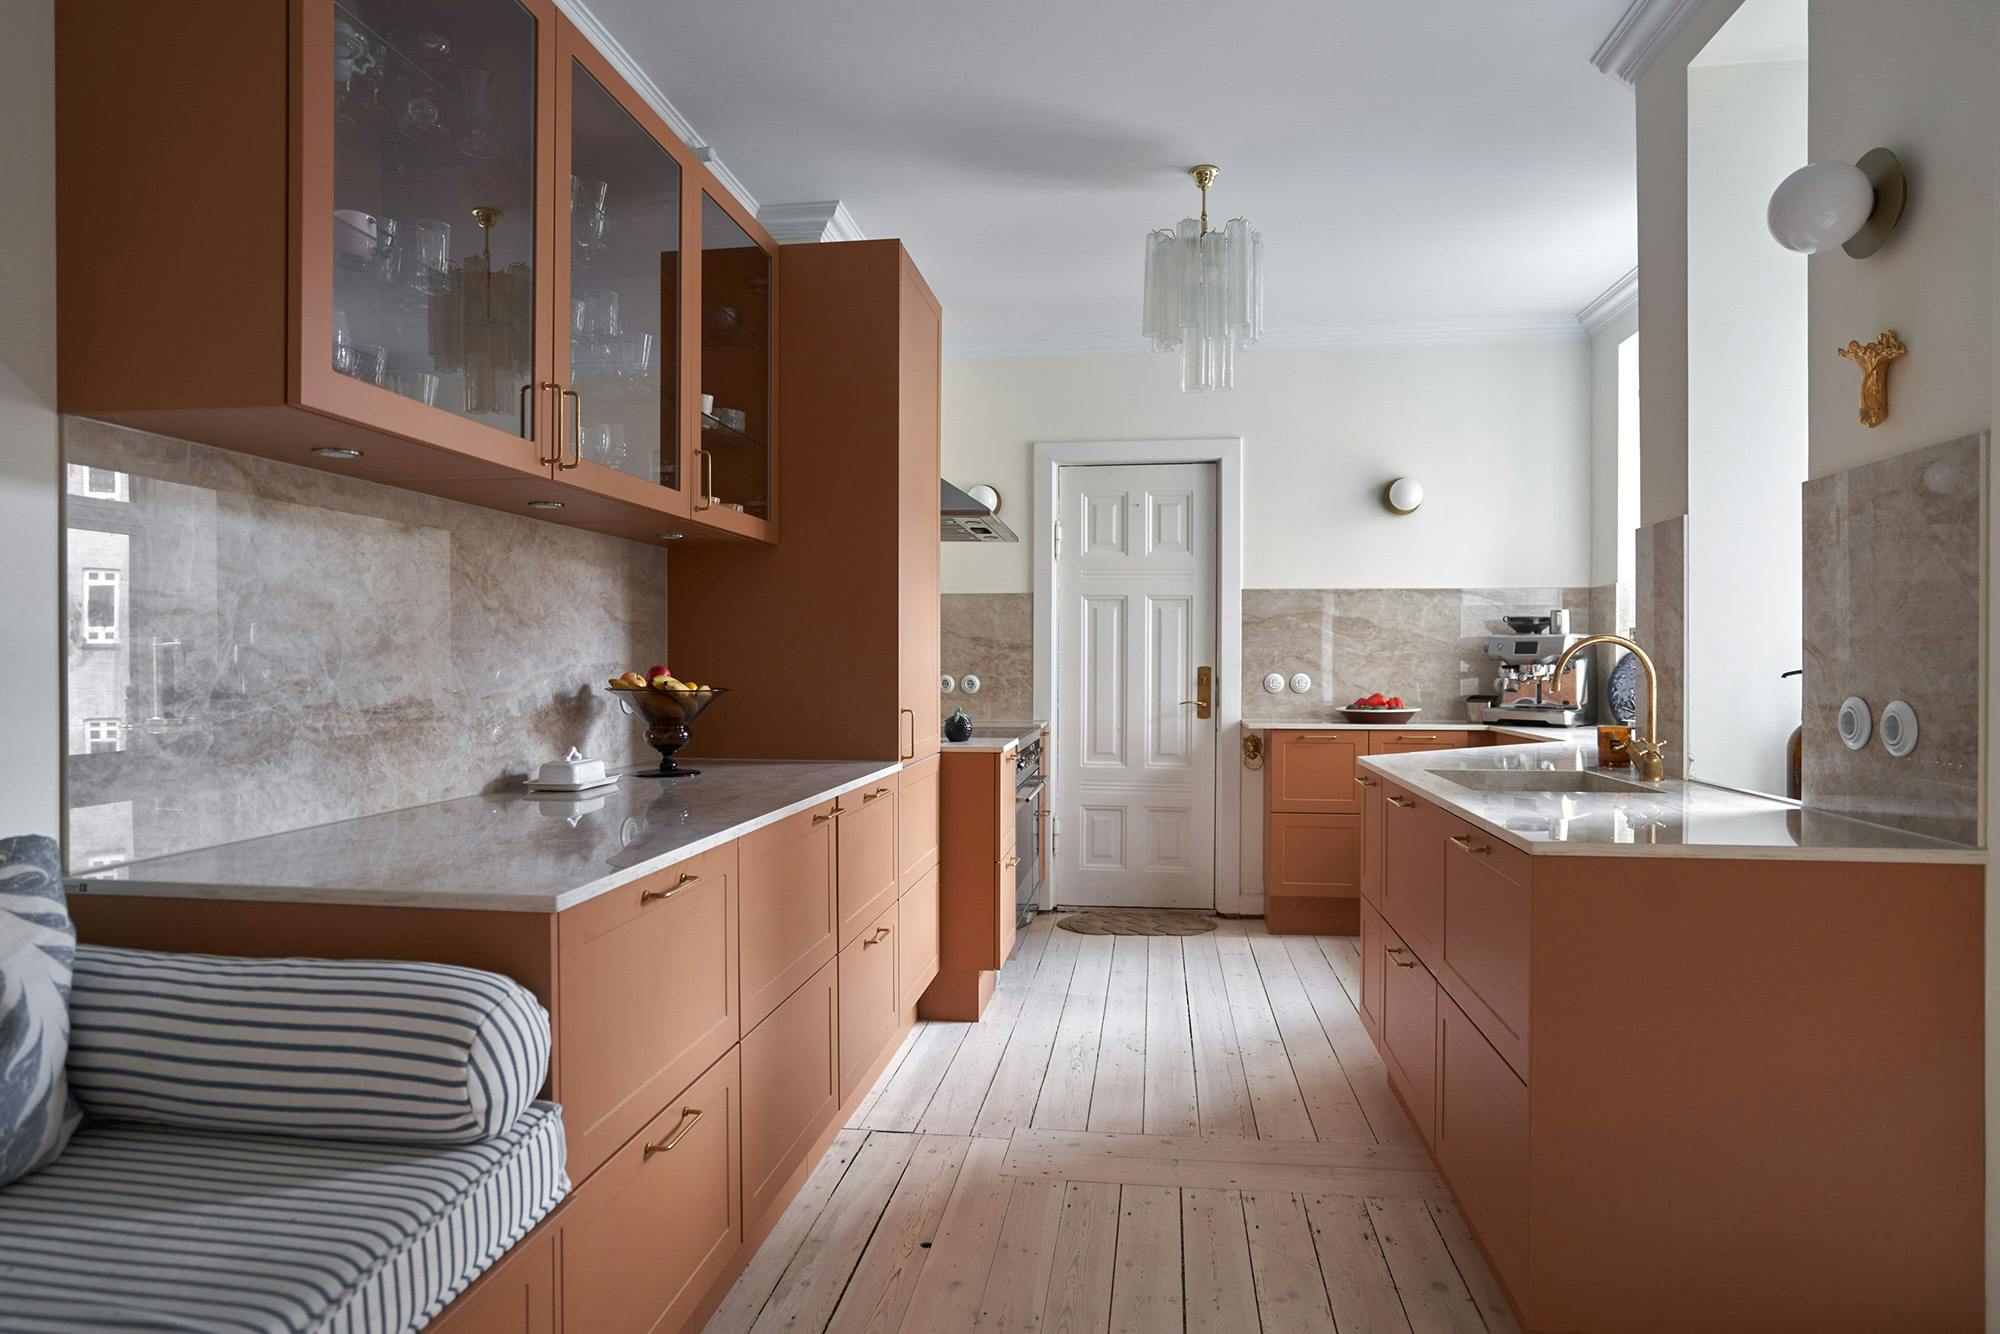 Numero immagine 42 della sezione corrente di Influencer Annamaria Väli-Klemelä chose sustainable countertops for her kitchen di Cosentino Italia